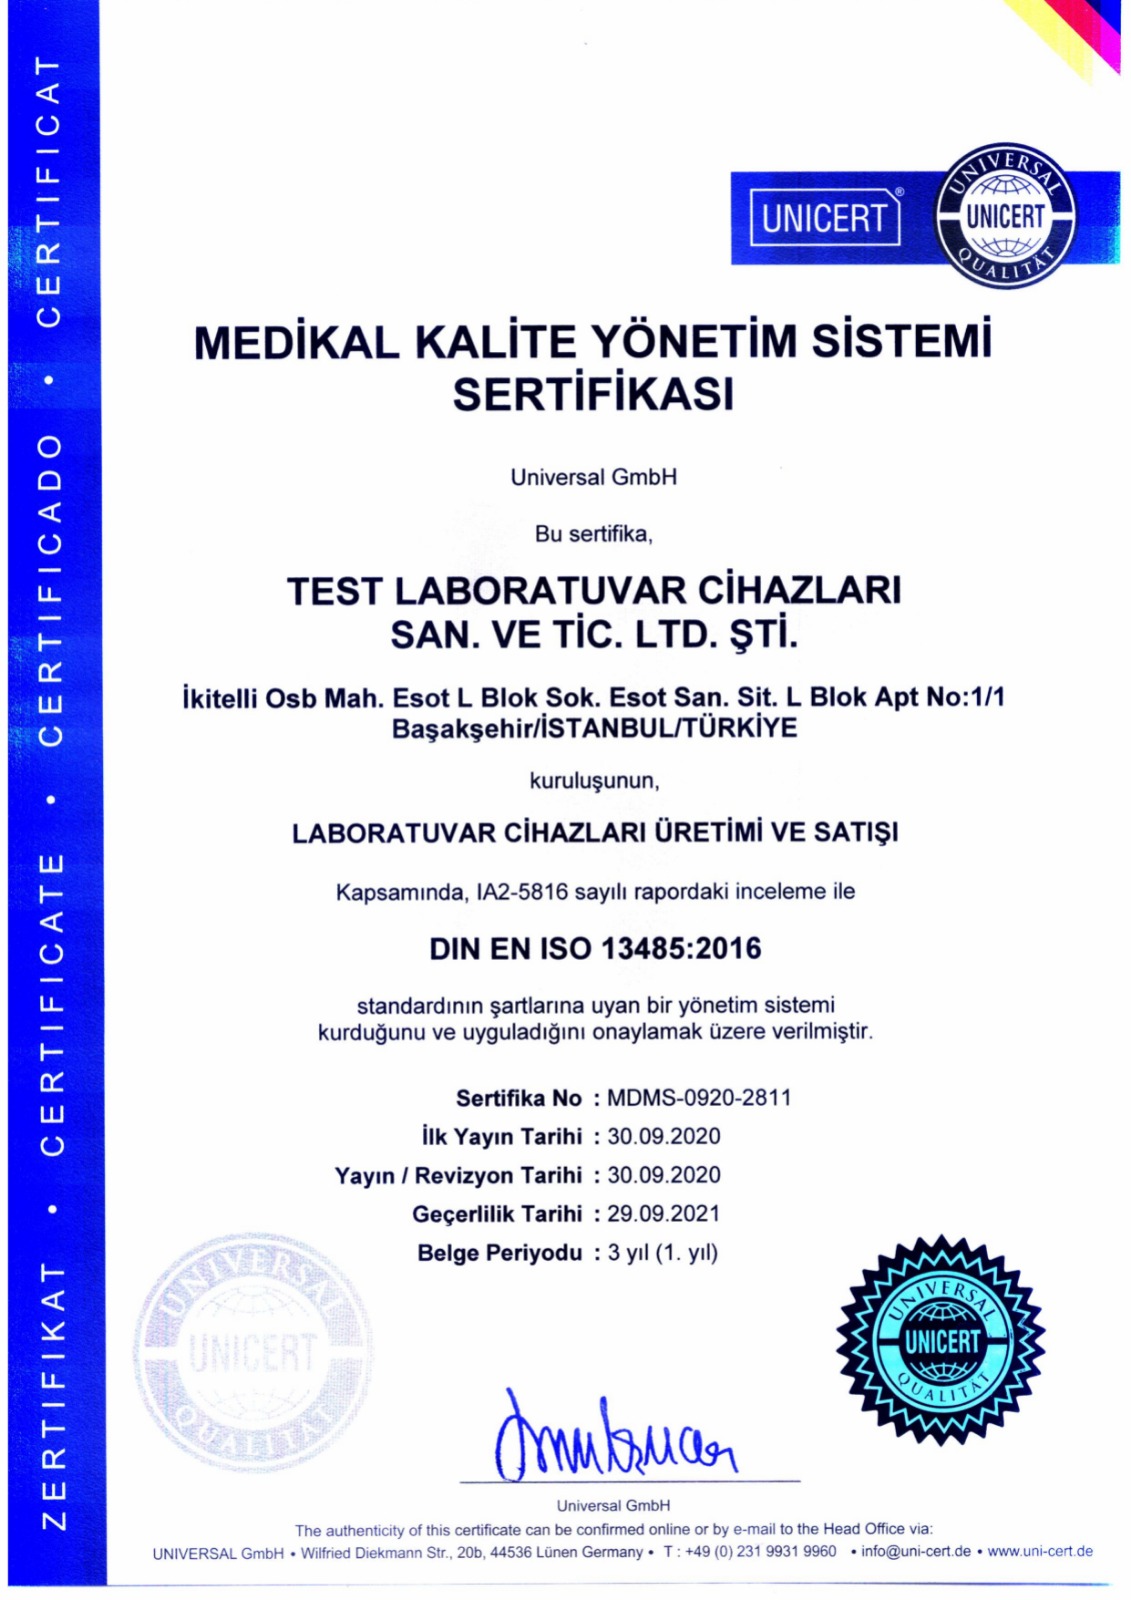 Medikal Kalite Yönetim Sistemi Sertifikası